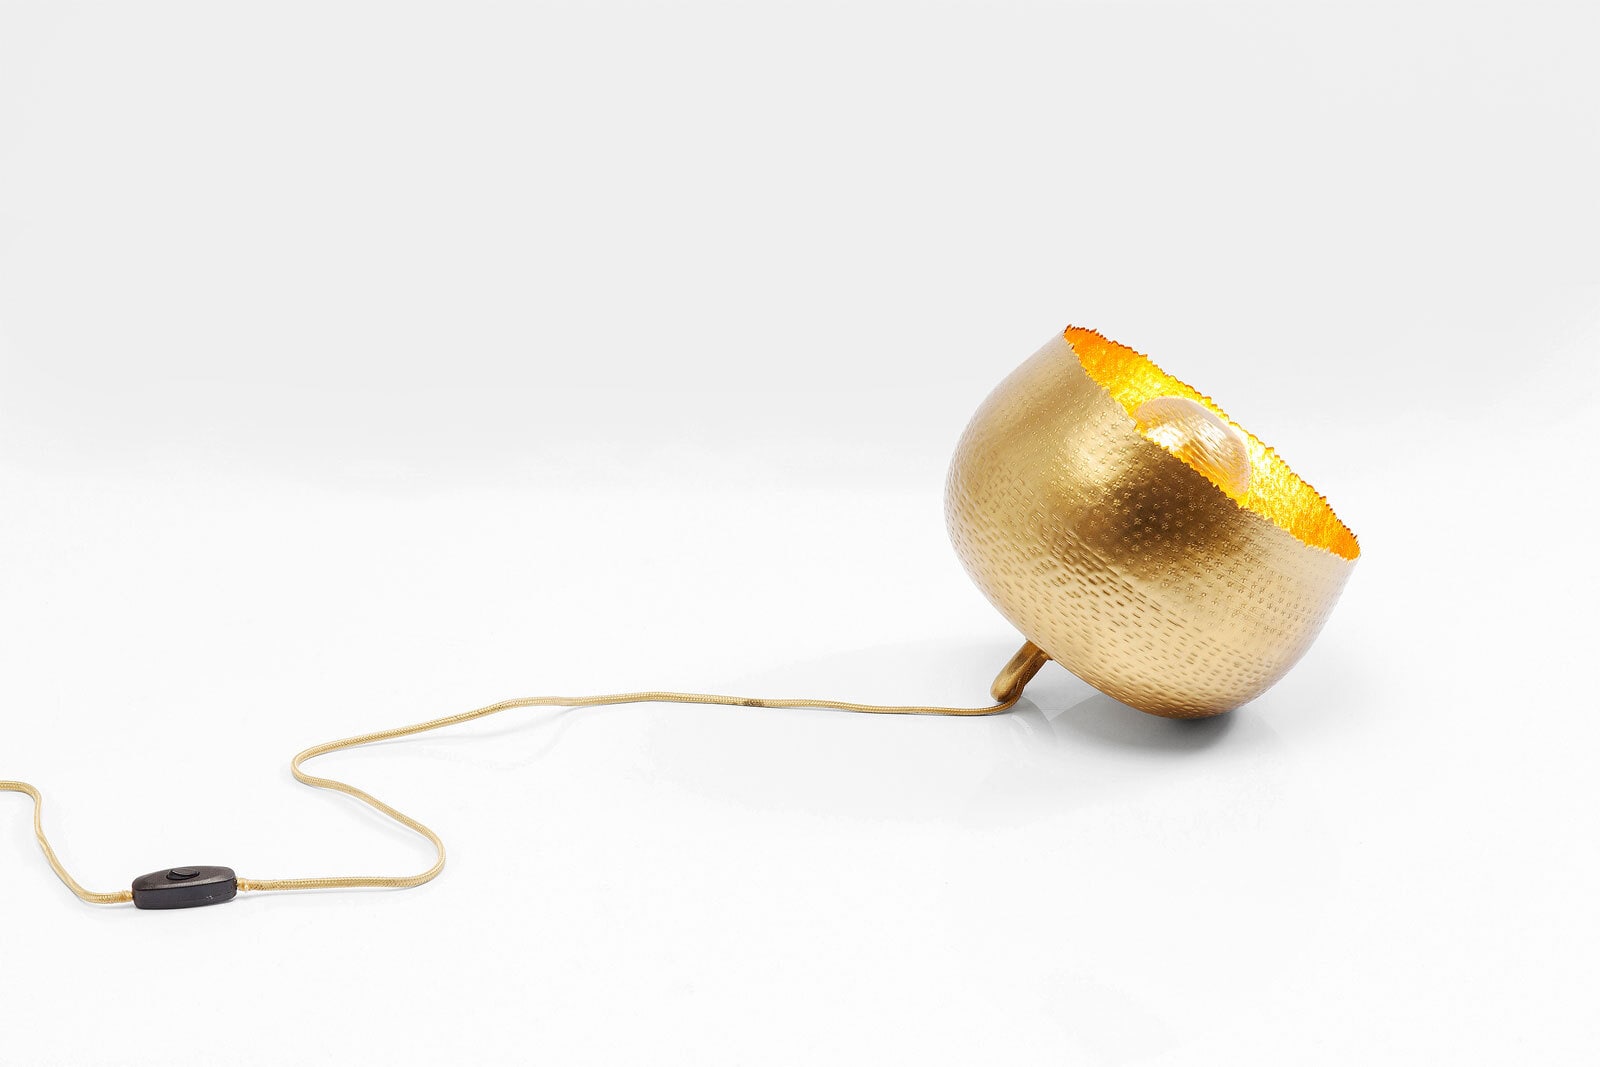 KARE DESIGN Retrofit Tischlampe APOLLON 35 cm goldfarbig